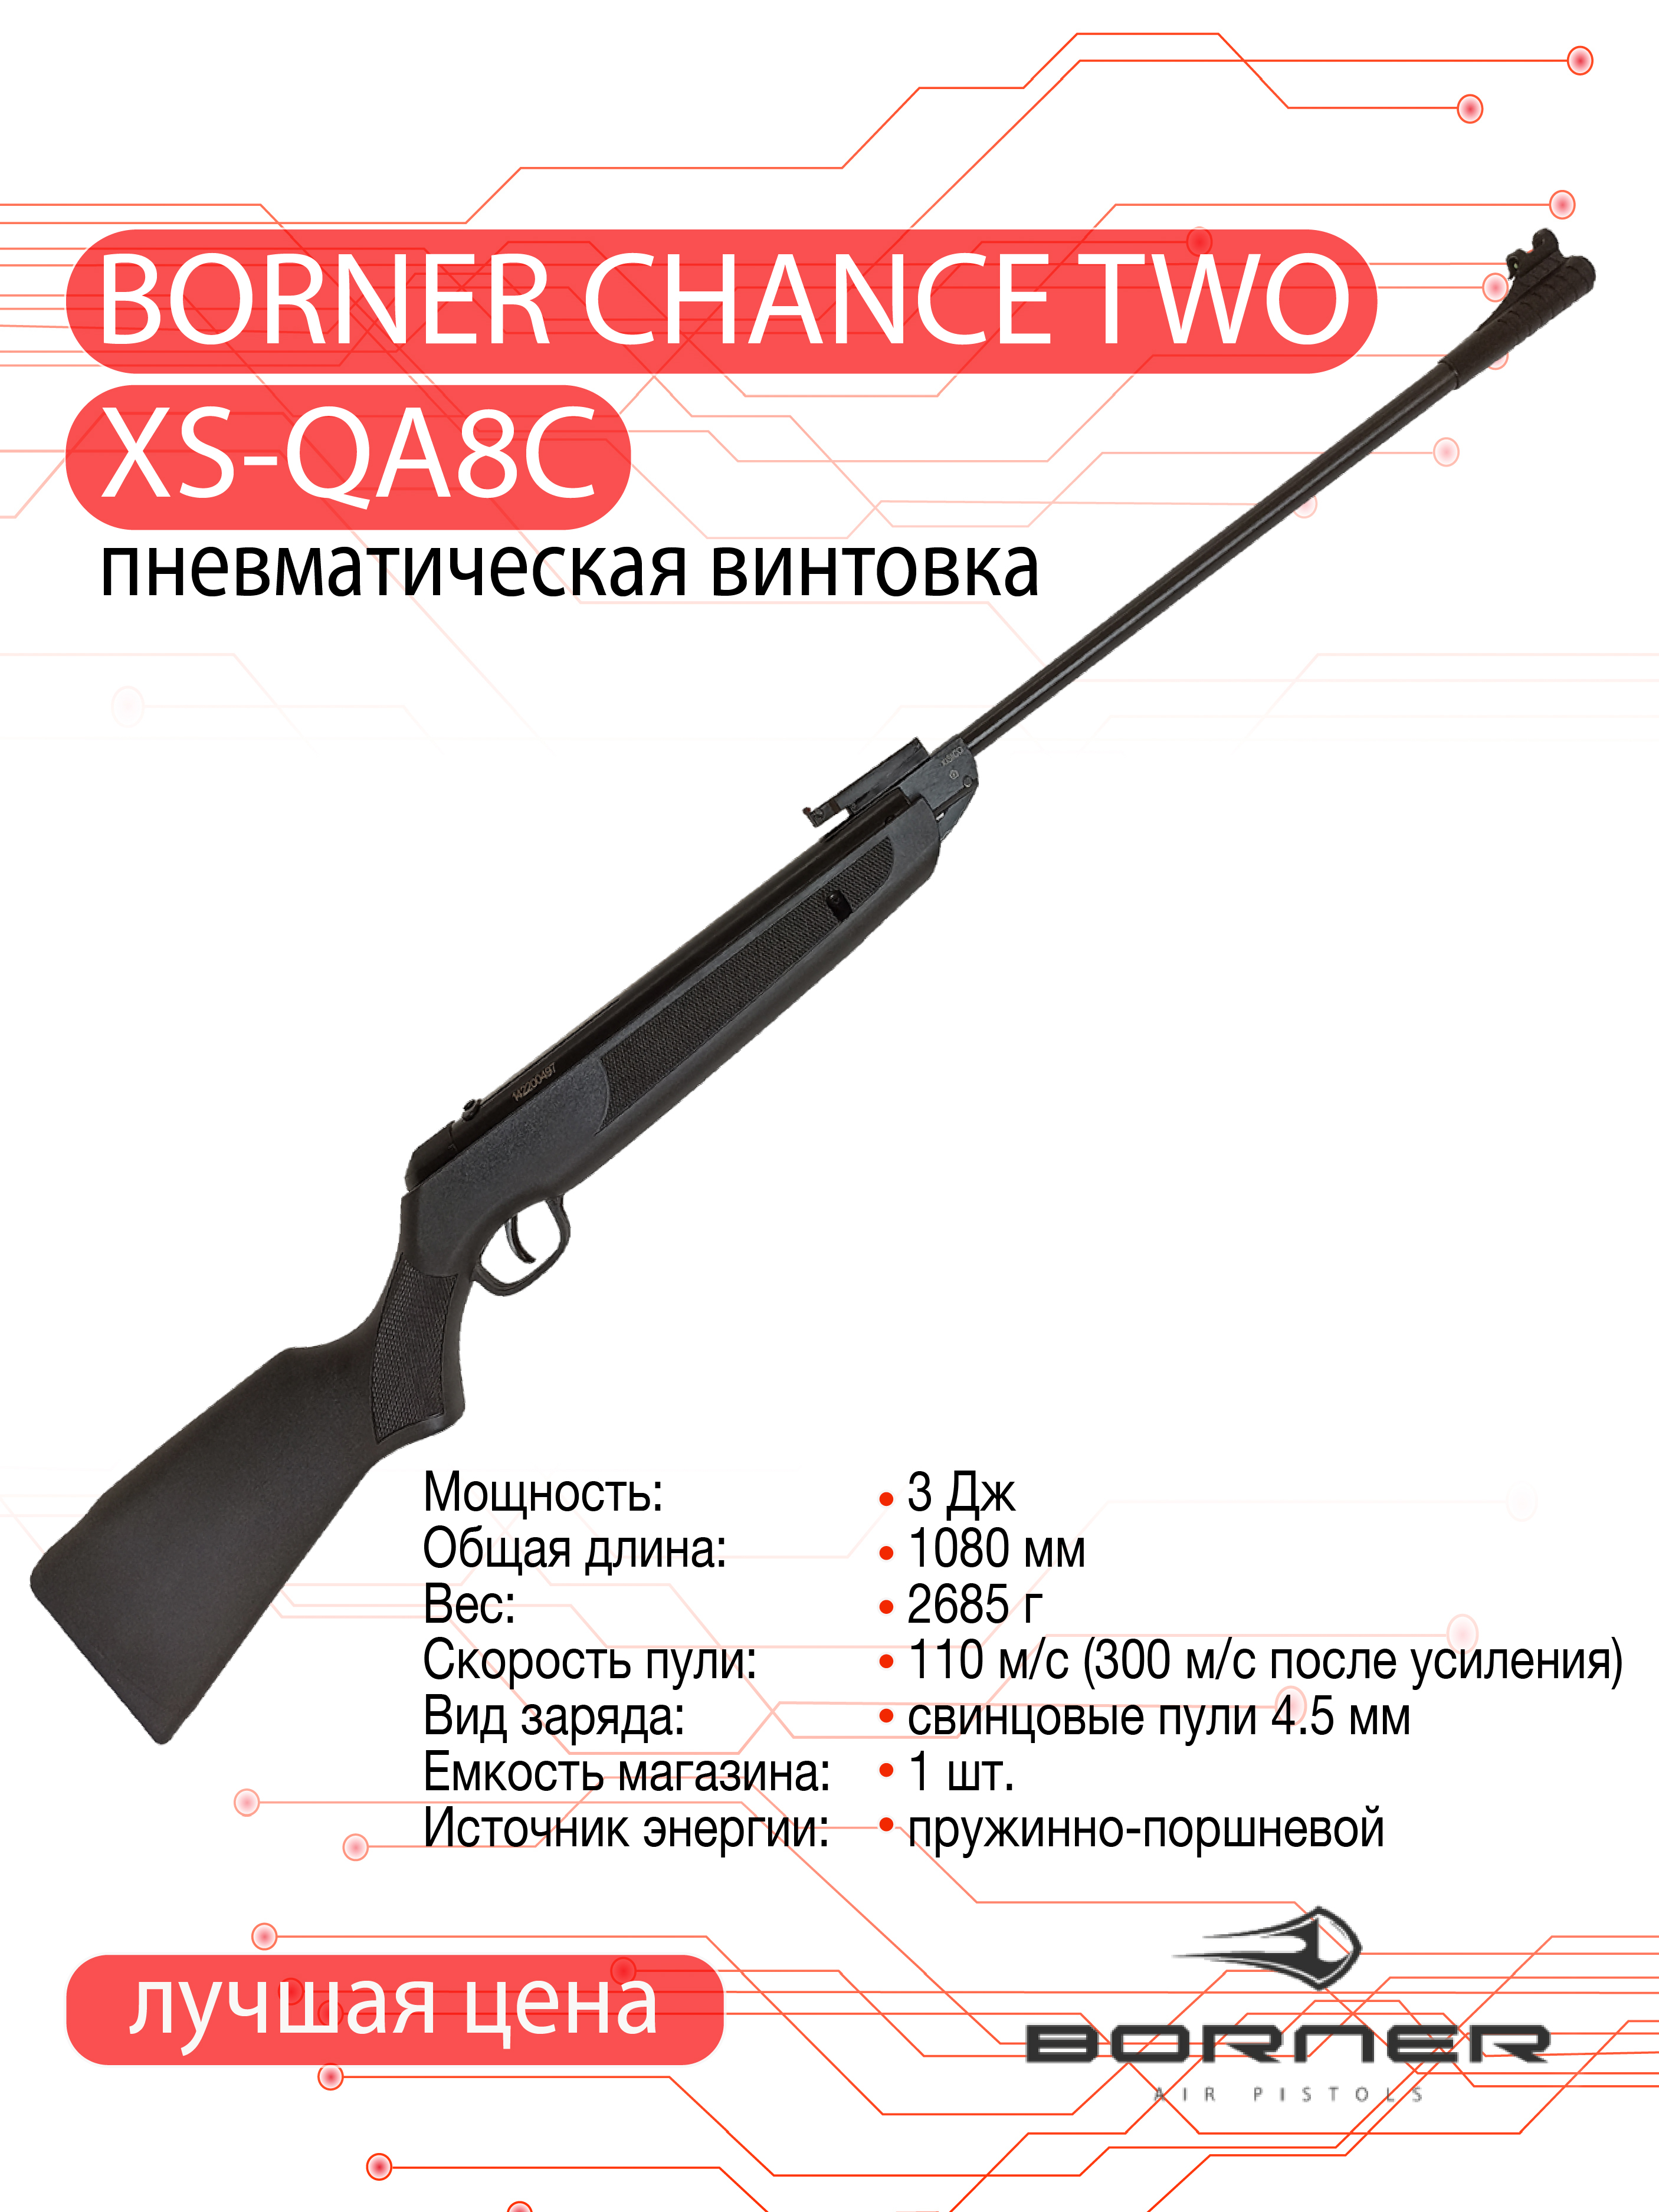 Винтовка пневматическая Borner Chance Two (пластик, Black, XS-QA8C) кал. 4.5 мм, 3 Дж.